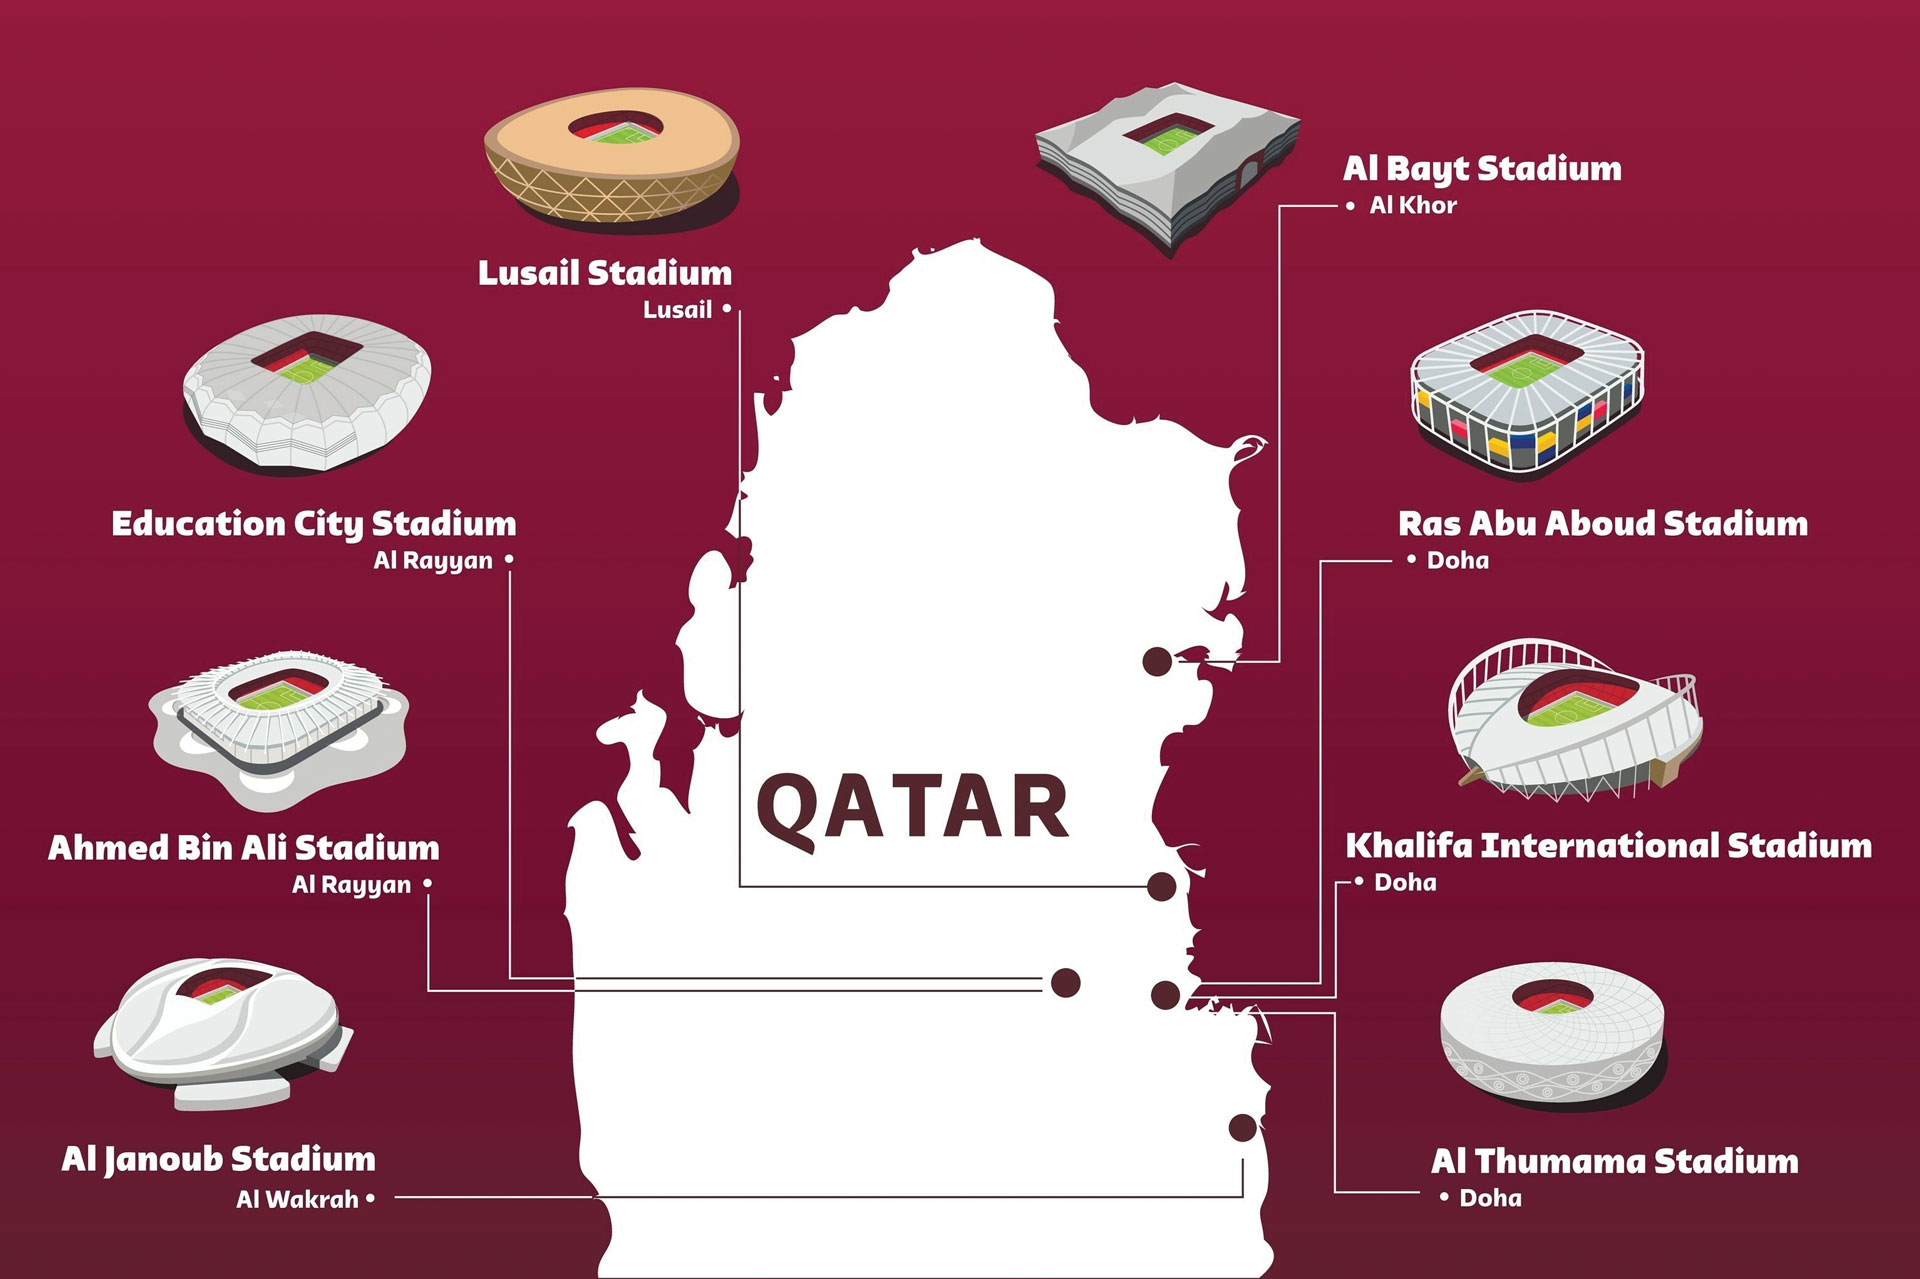 A Copa do Mundo de 2022 está sendo realizada em oito estádios espalhados em todo o Catar (Imagem: iloveqatar.net)